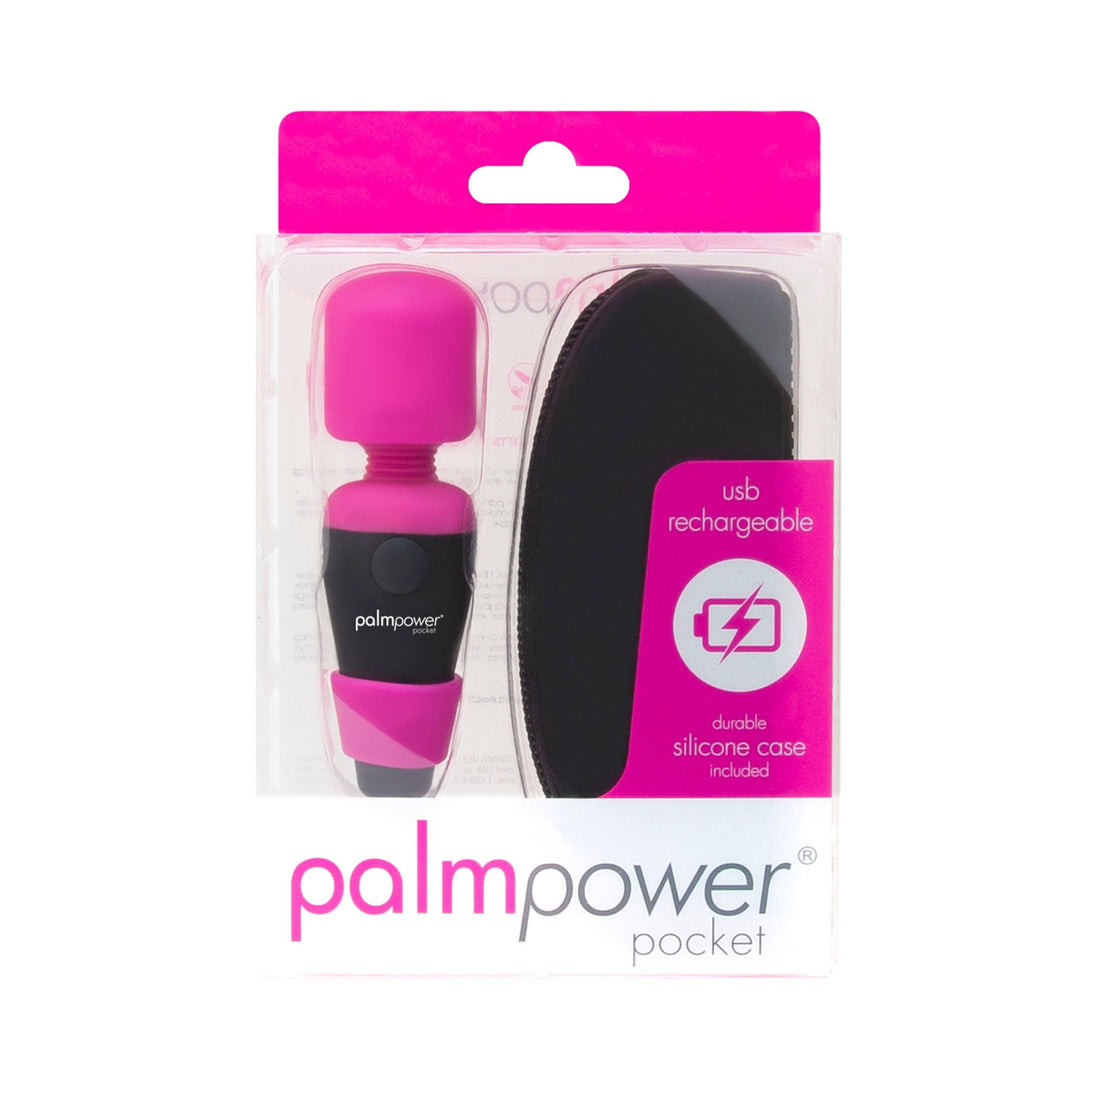  palmpower-pocket-ansicht-verpackung